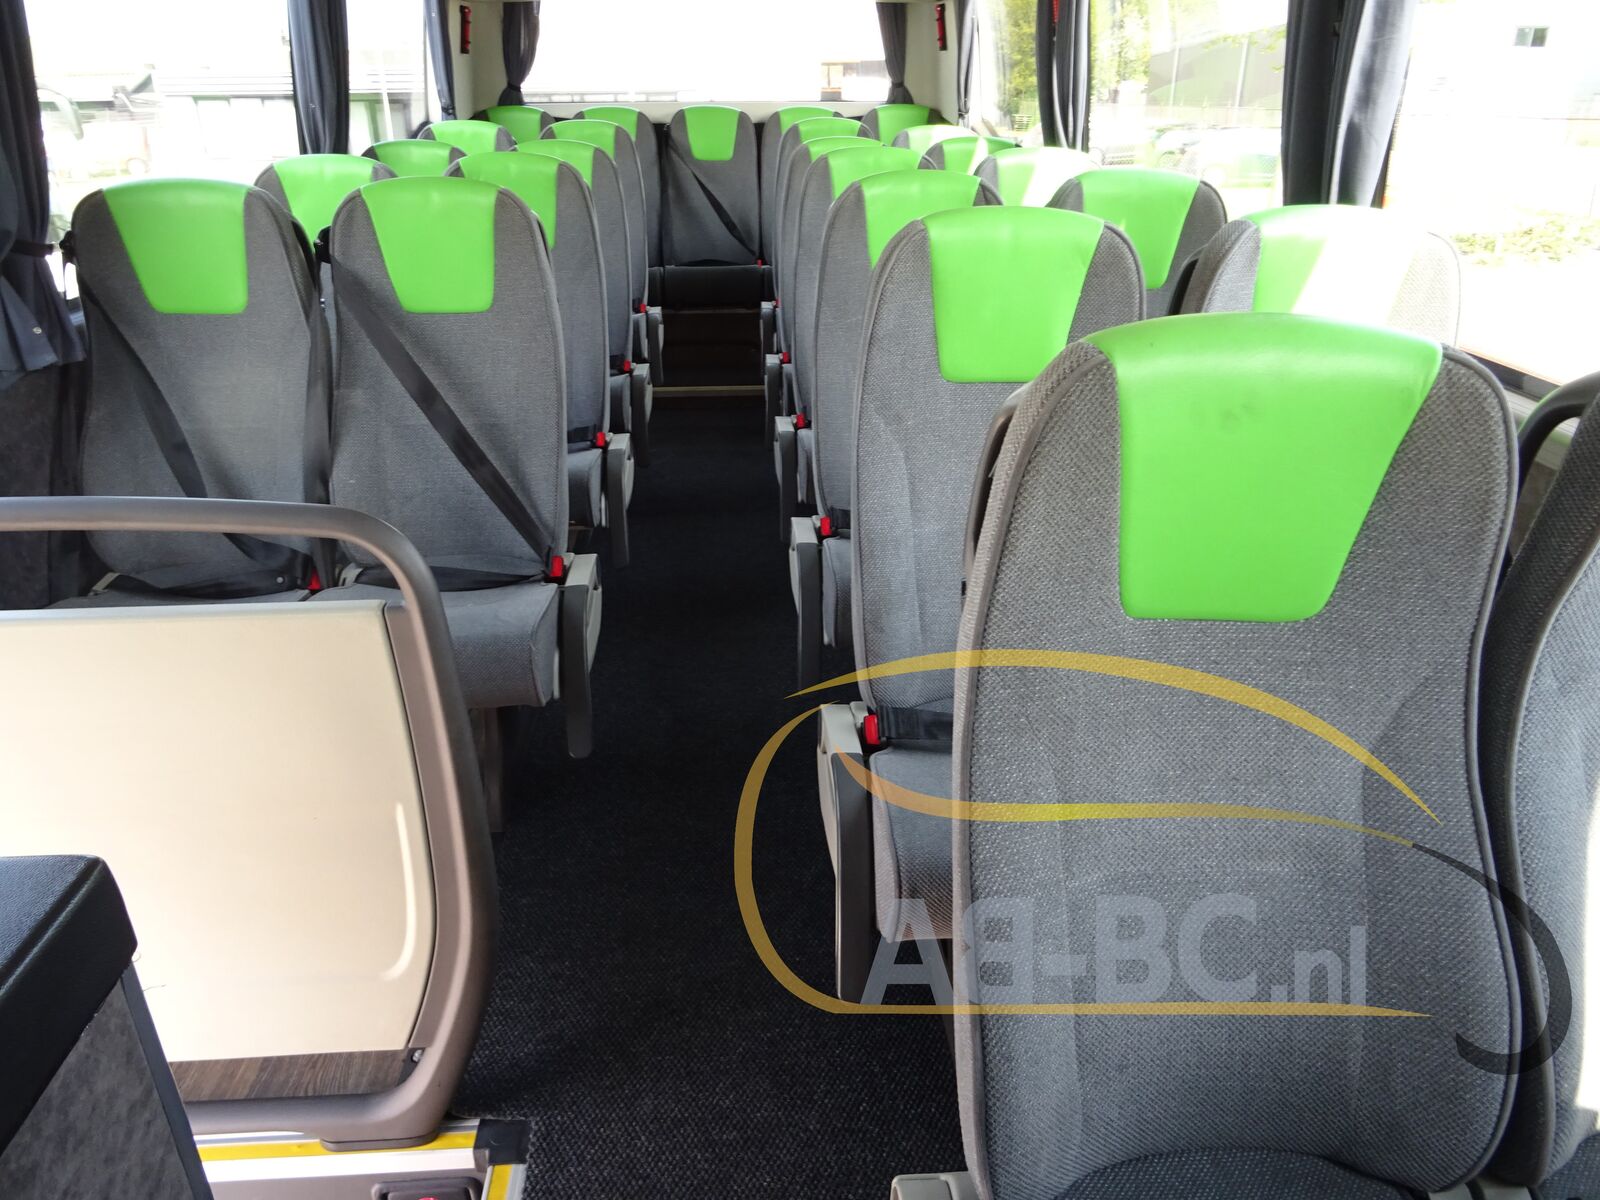 coach-bus-VDL-Futura-FHD2-129-440-51-Seats-EURO-6-2-PIECES-AVAILABLE---1651157591611279171_orig_ed1480e8f00bef4063492ee00e8ea25f--22042817510111469500